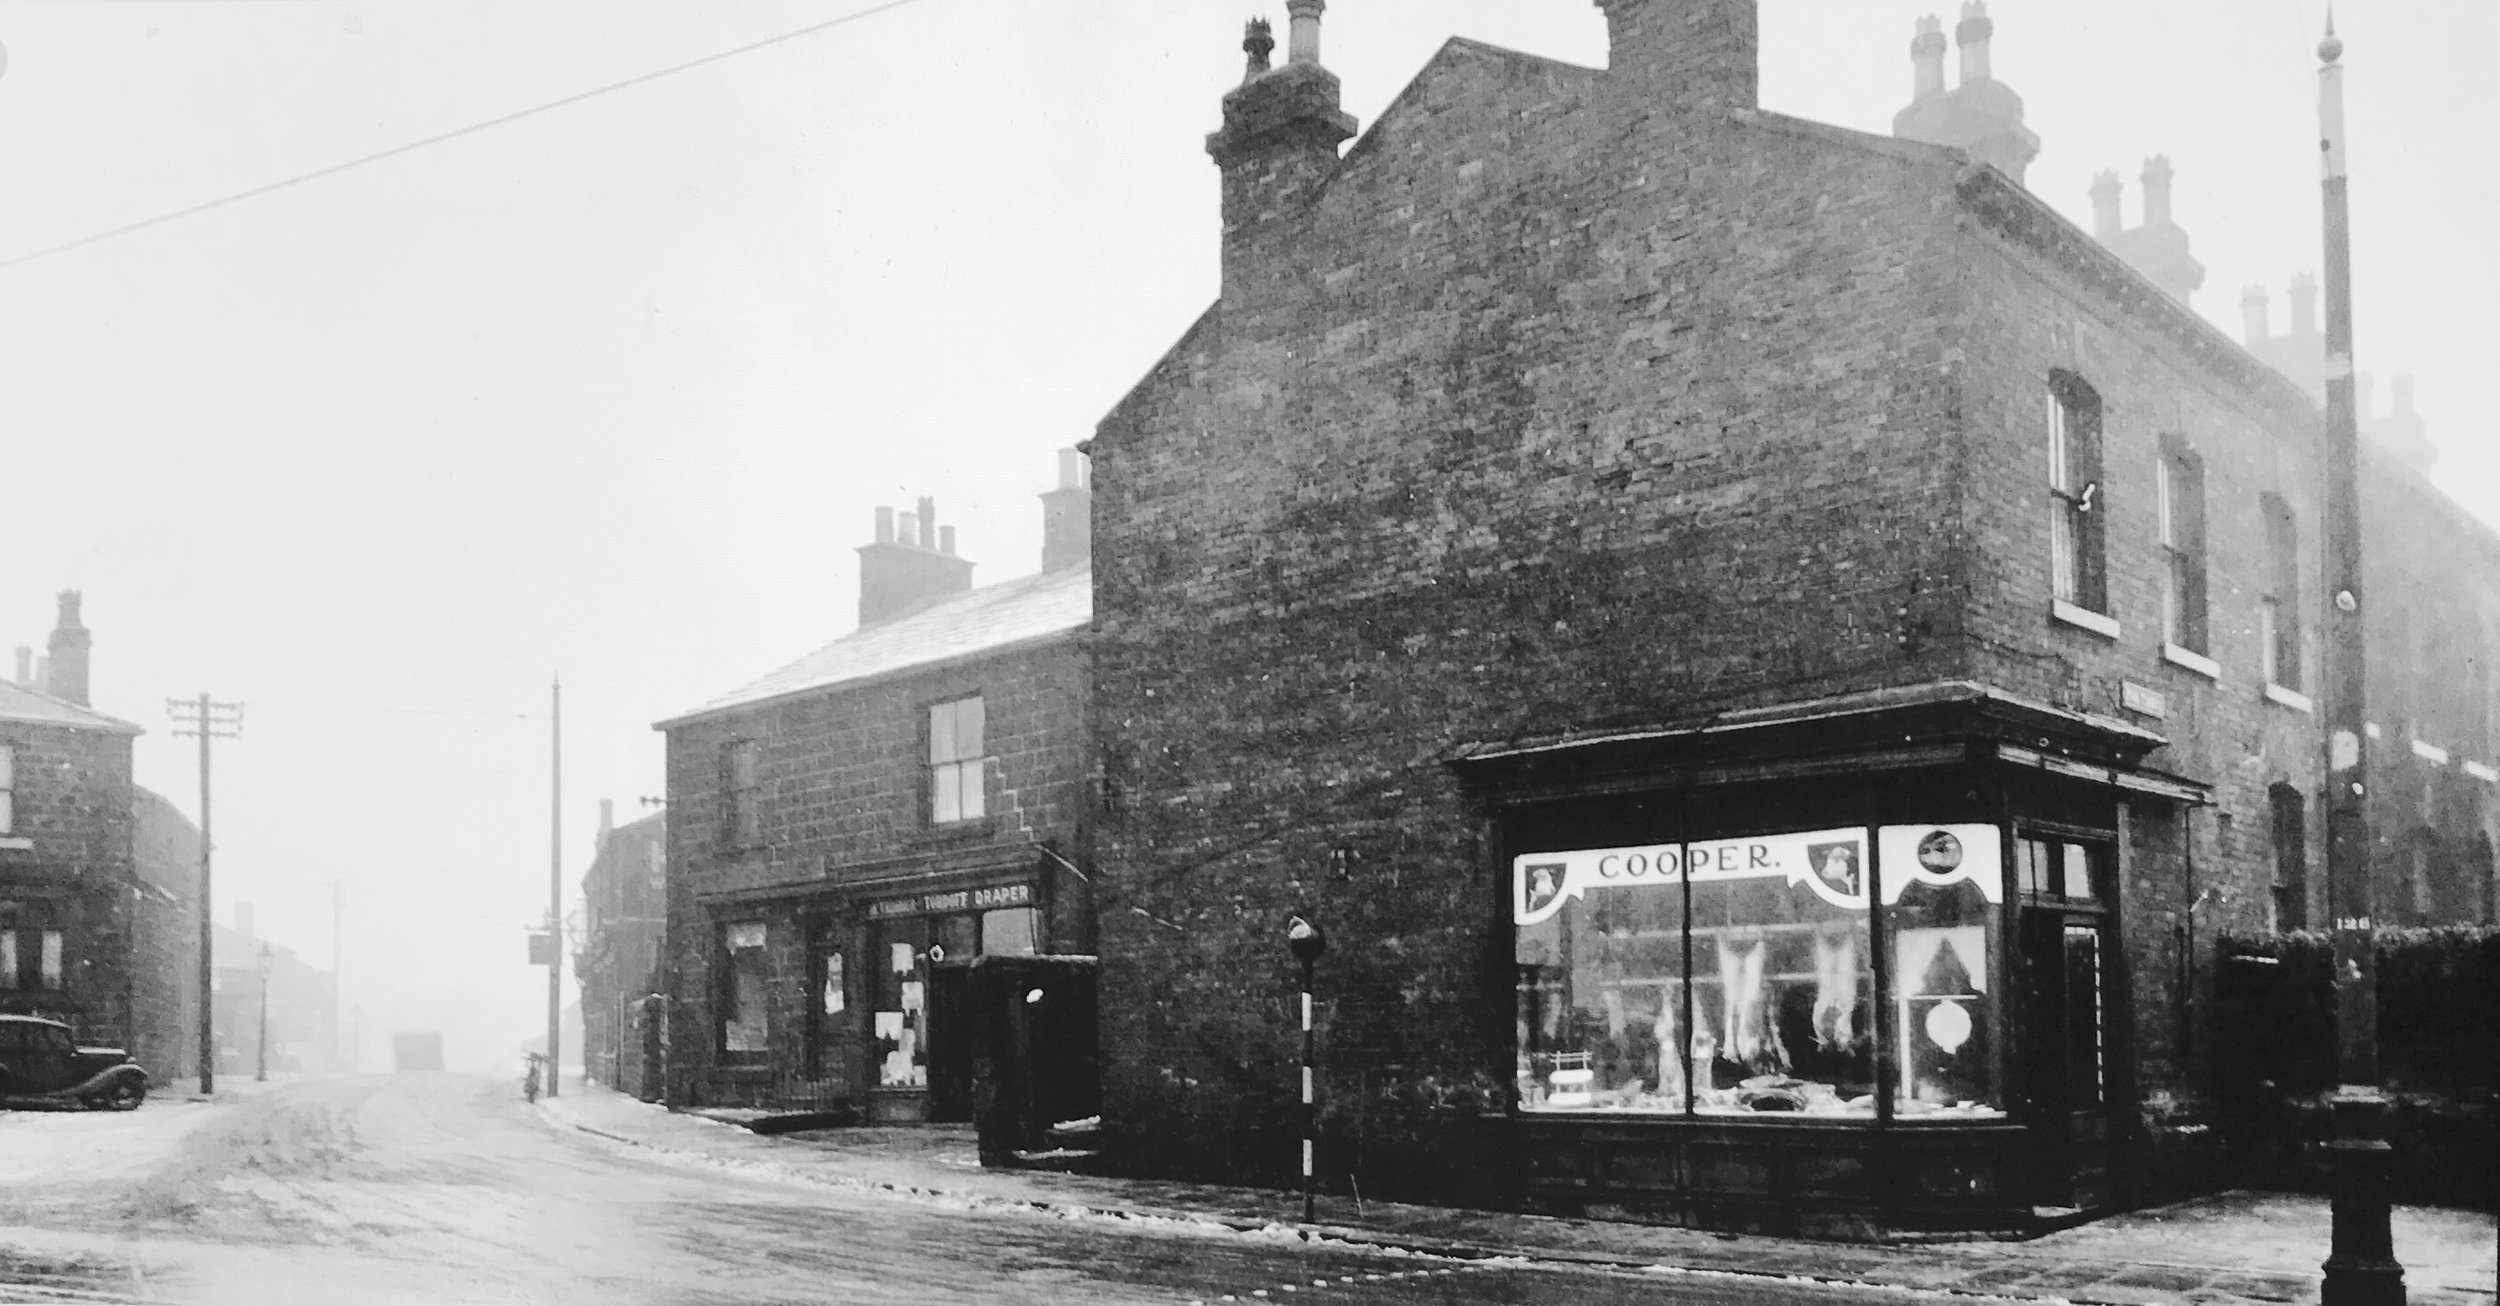 Weetwood Lane, 1930